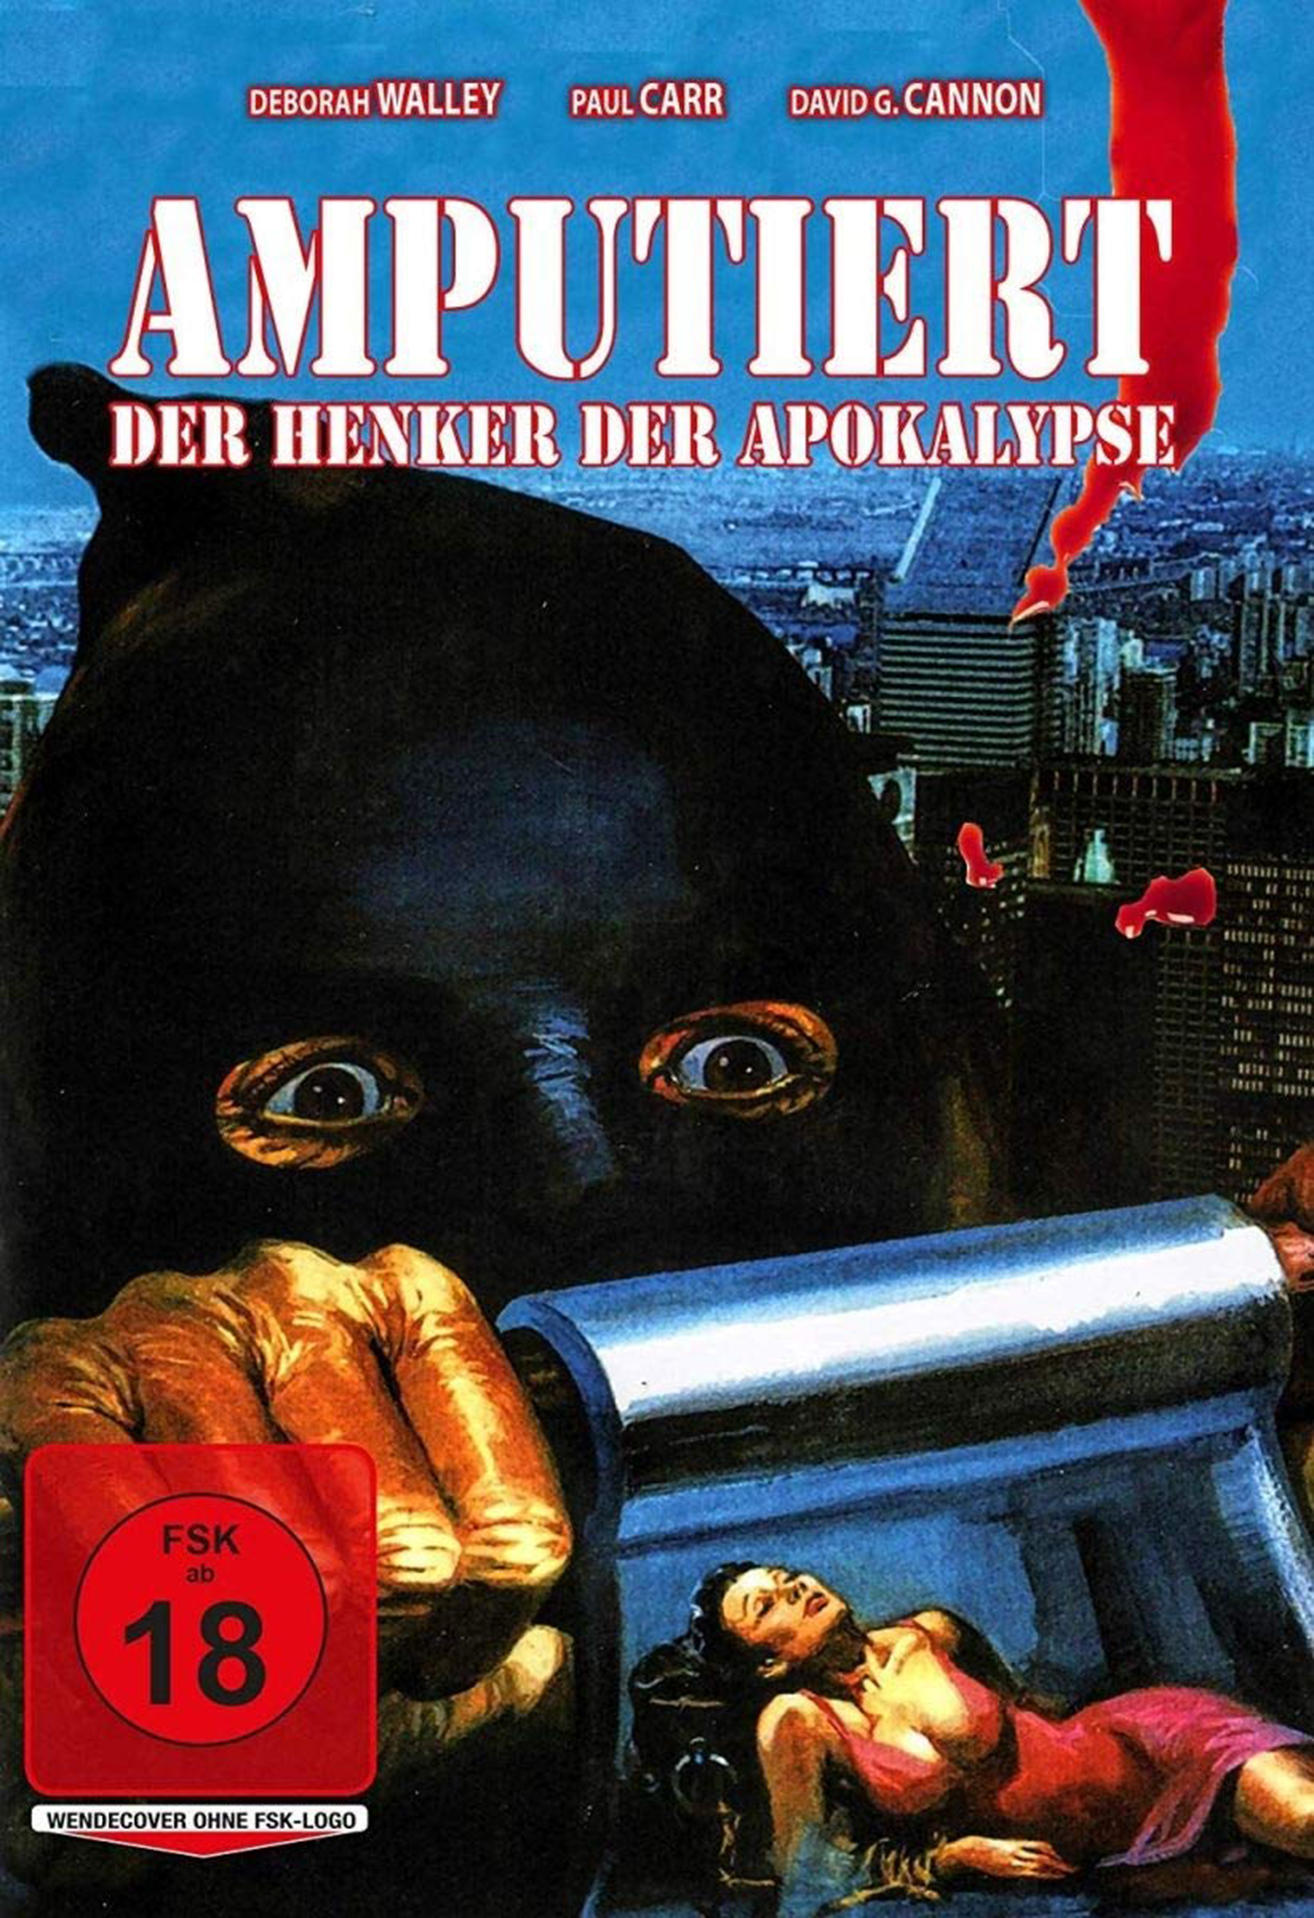 Amputiert-Der Henker der Apokalypse (1973) DVD